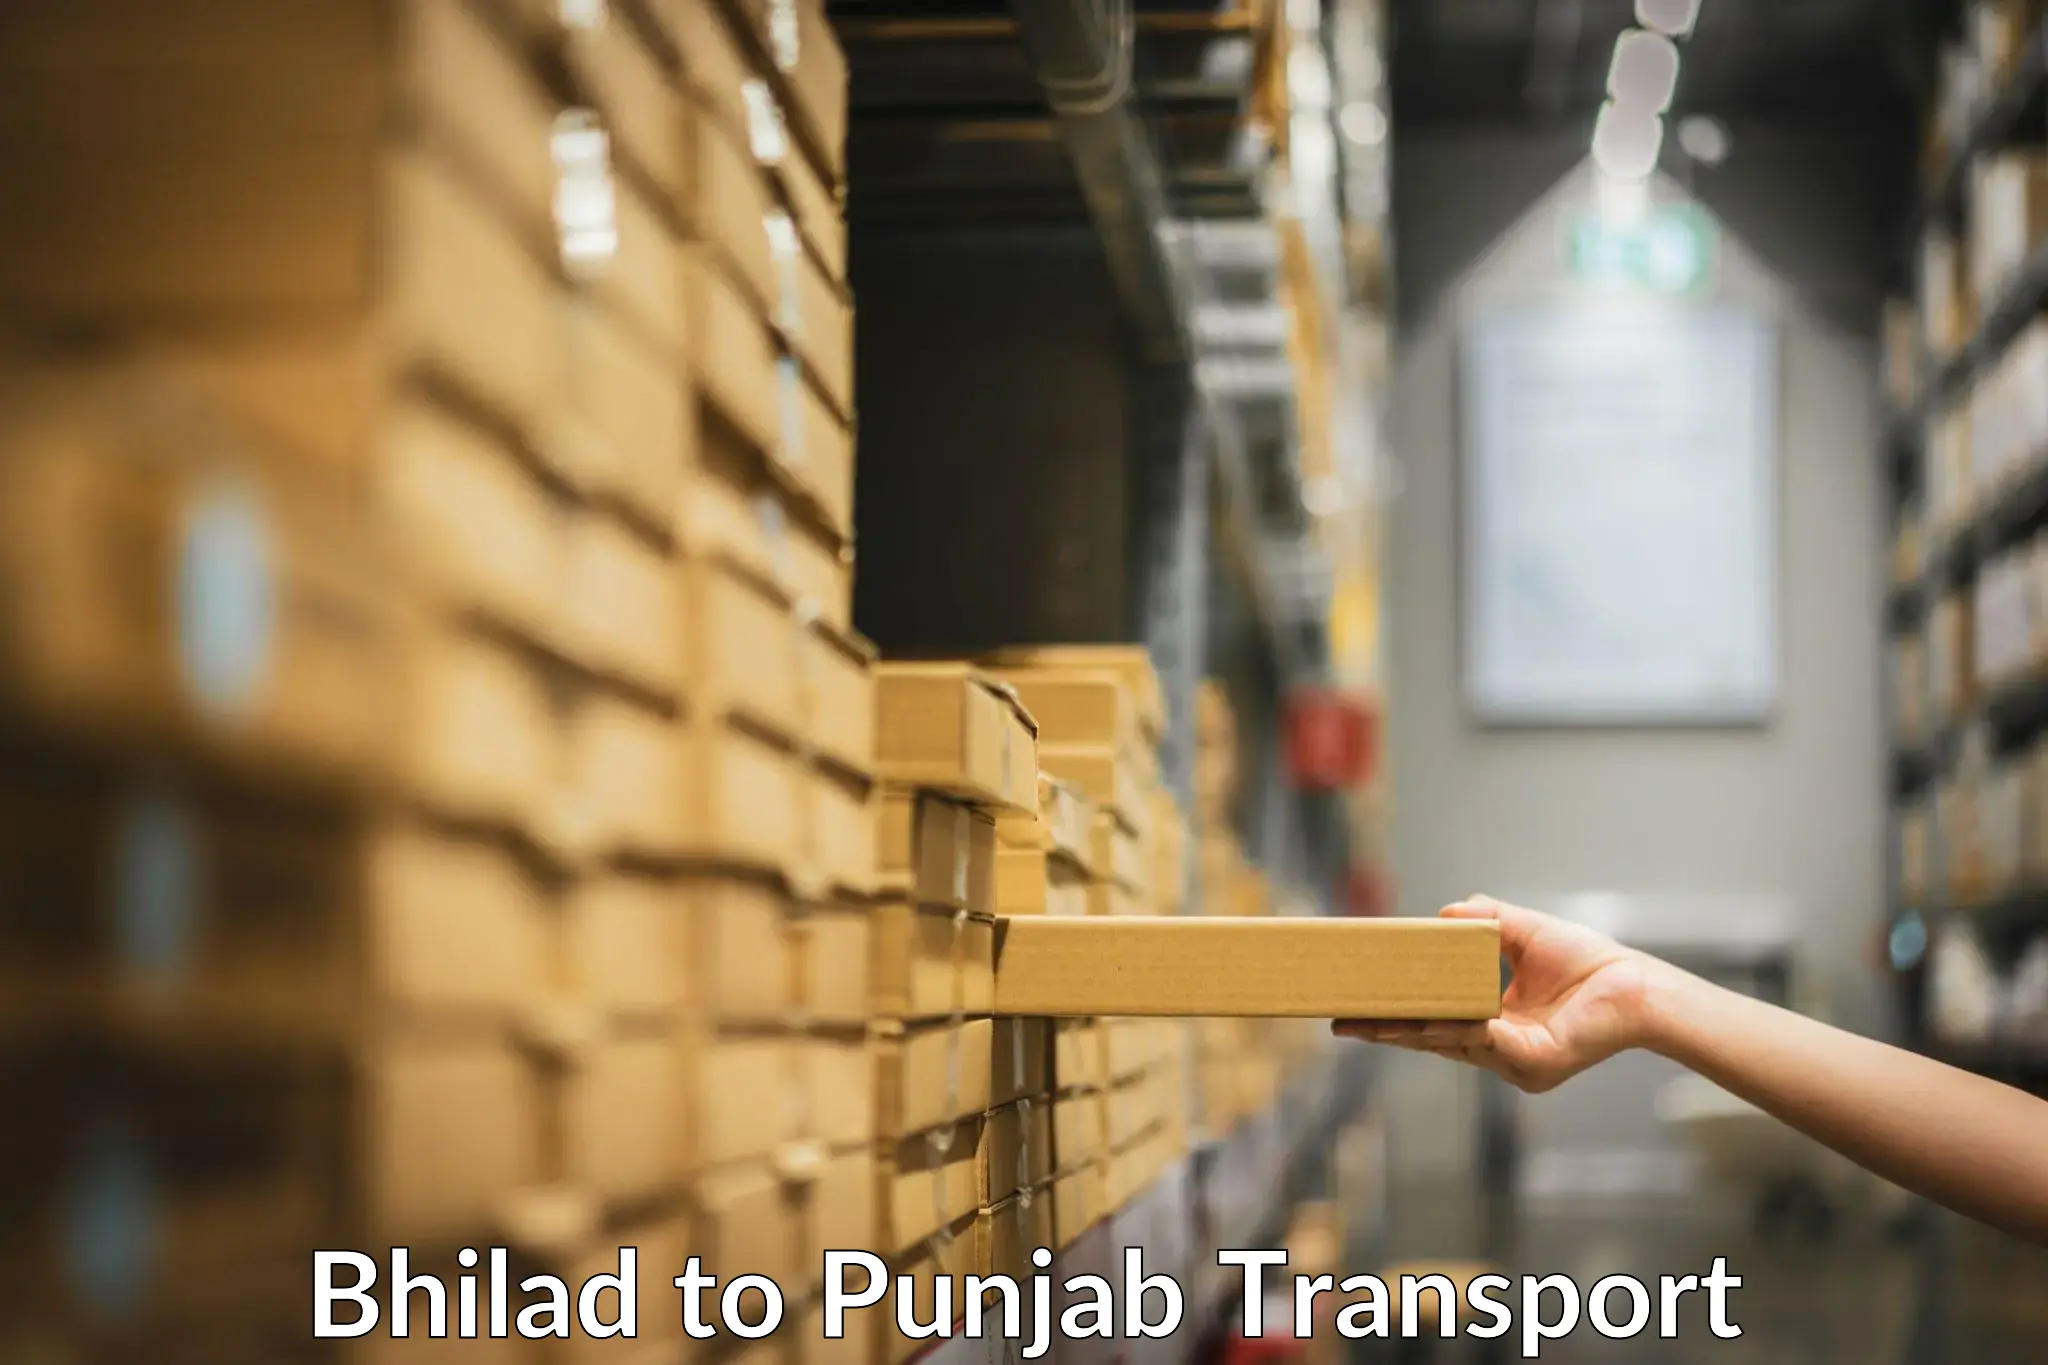 Pick up transport service Bhilad to Goindwal Sahib